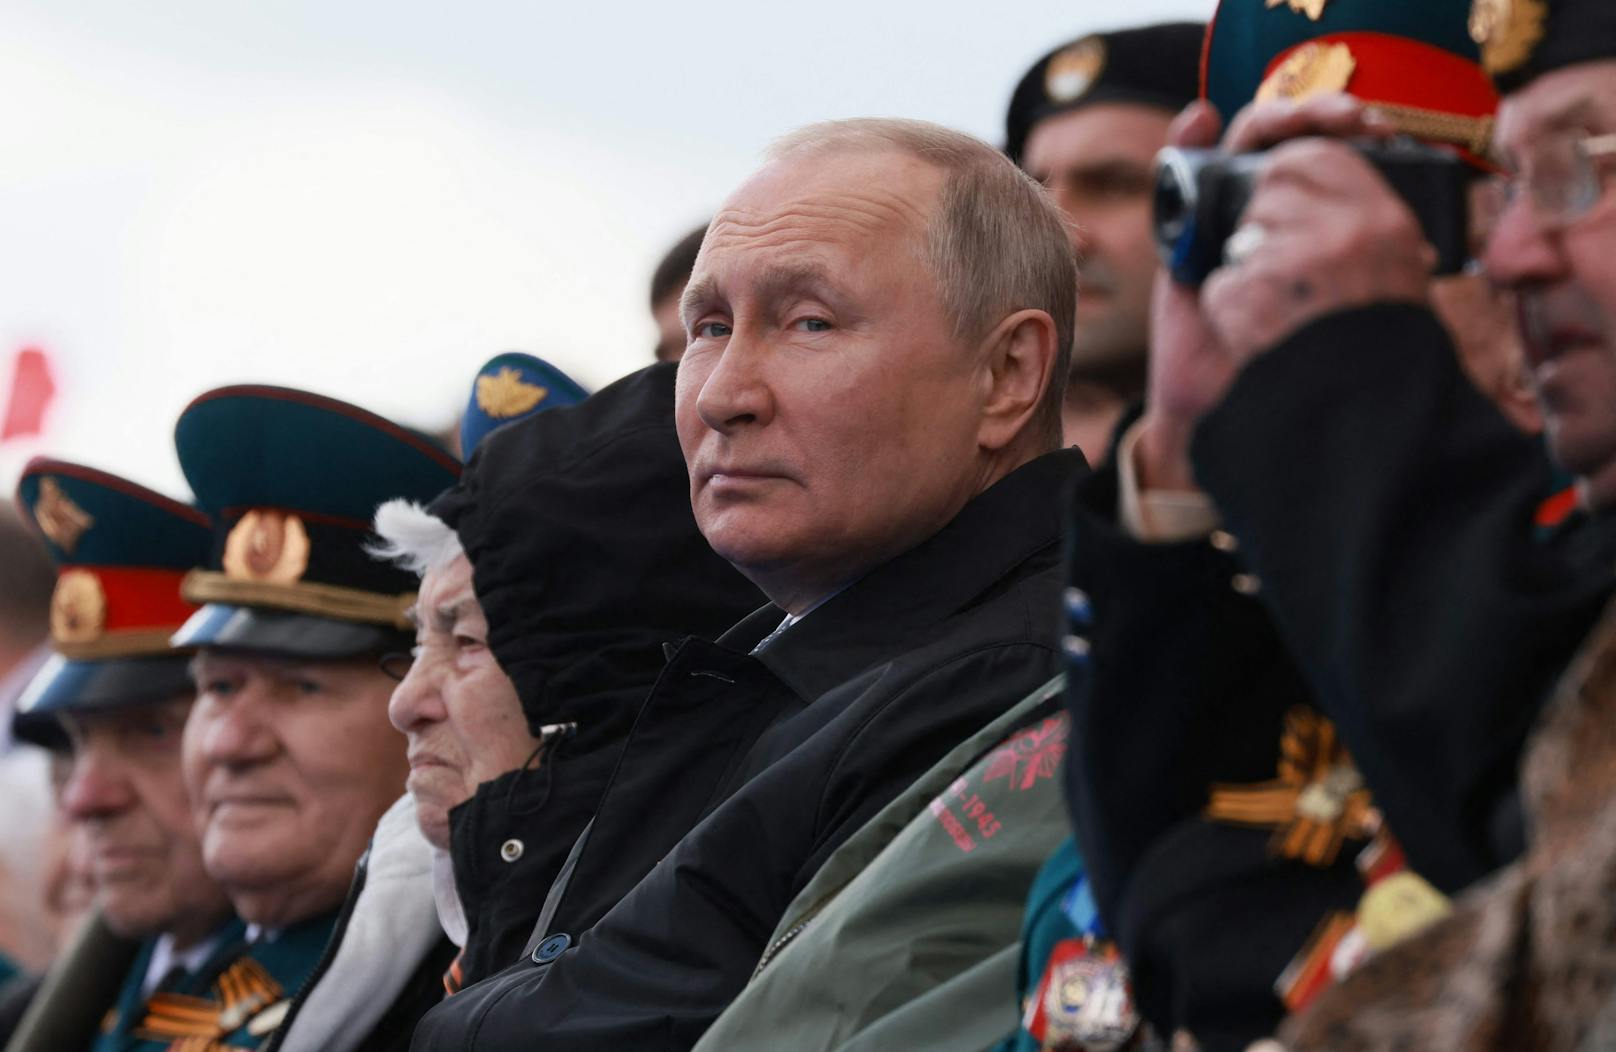 Klitschko warnt: "Putin ist nicht mehr bei Sinnen"